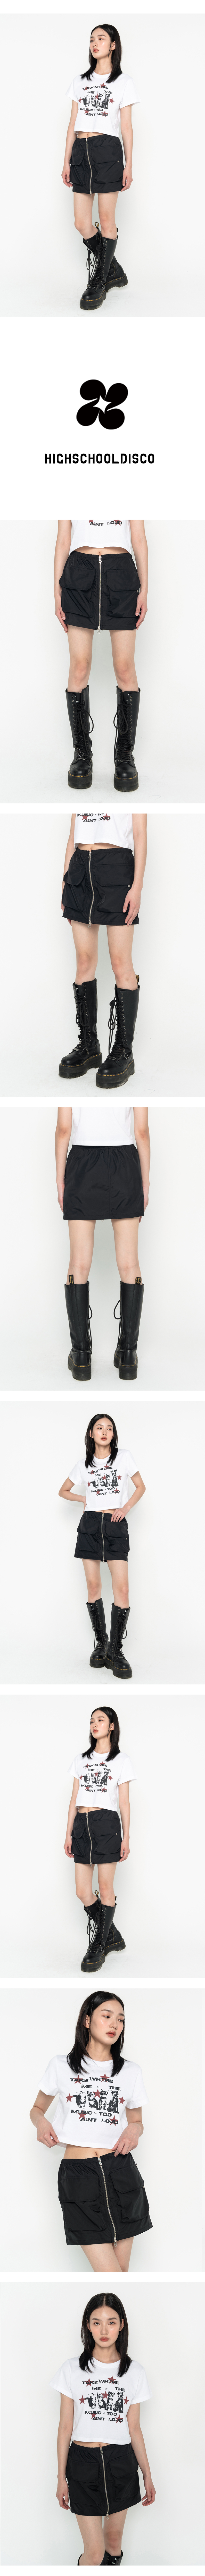 Zipper cargo pocket low rise skirt Black